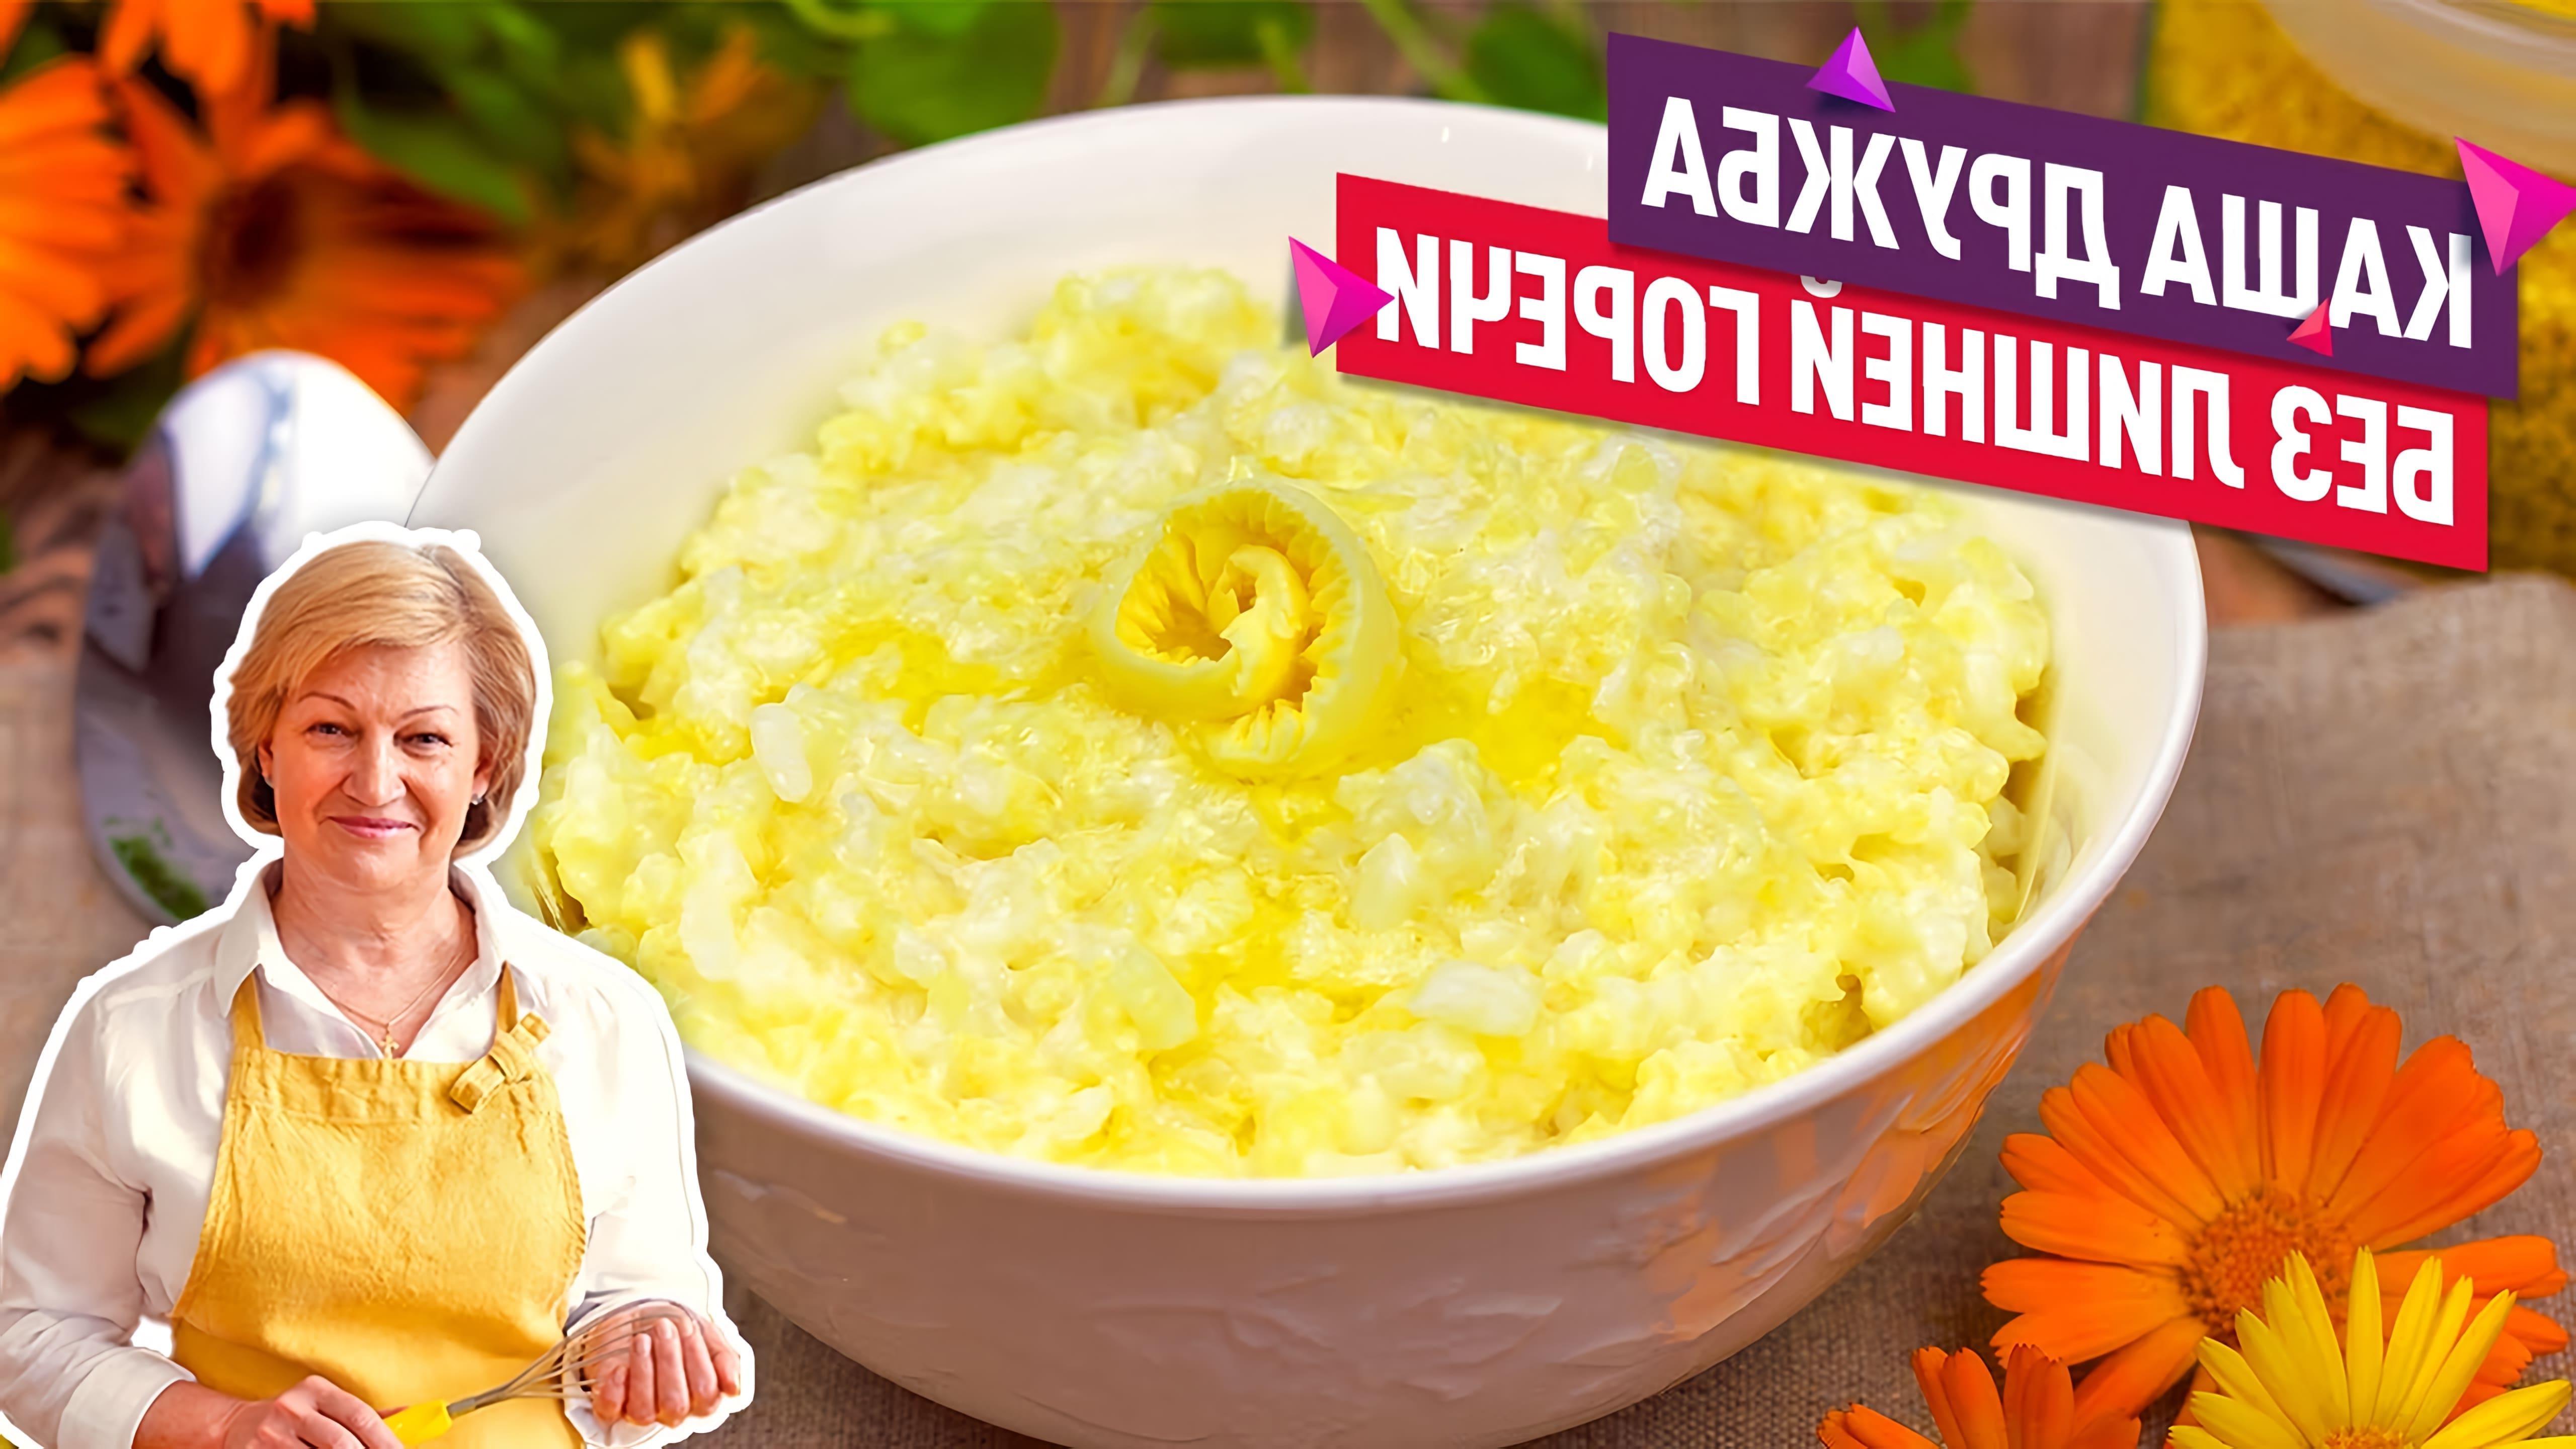 В этом видео демонстрируется рецепт приготовления каши "Дружба" из пшена и риса на молоке